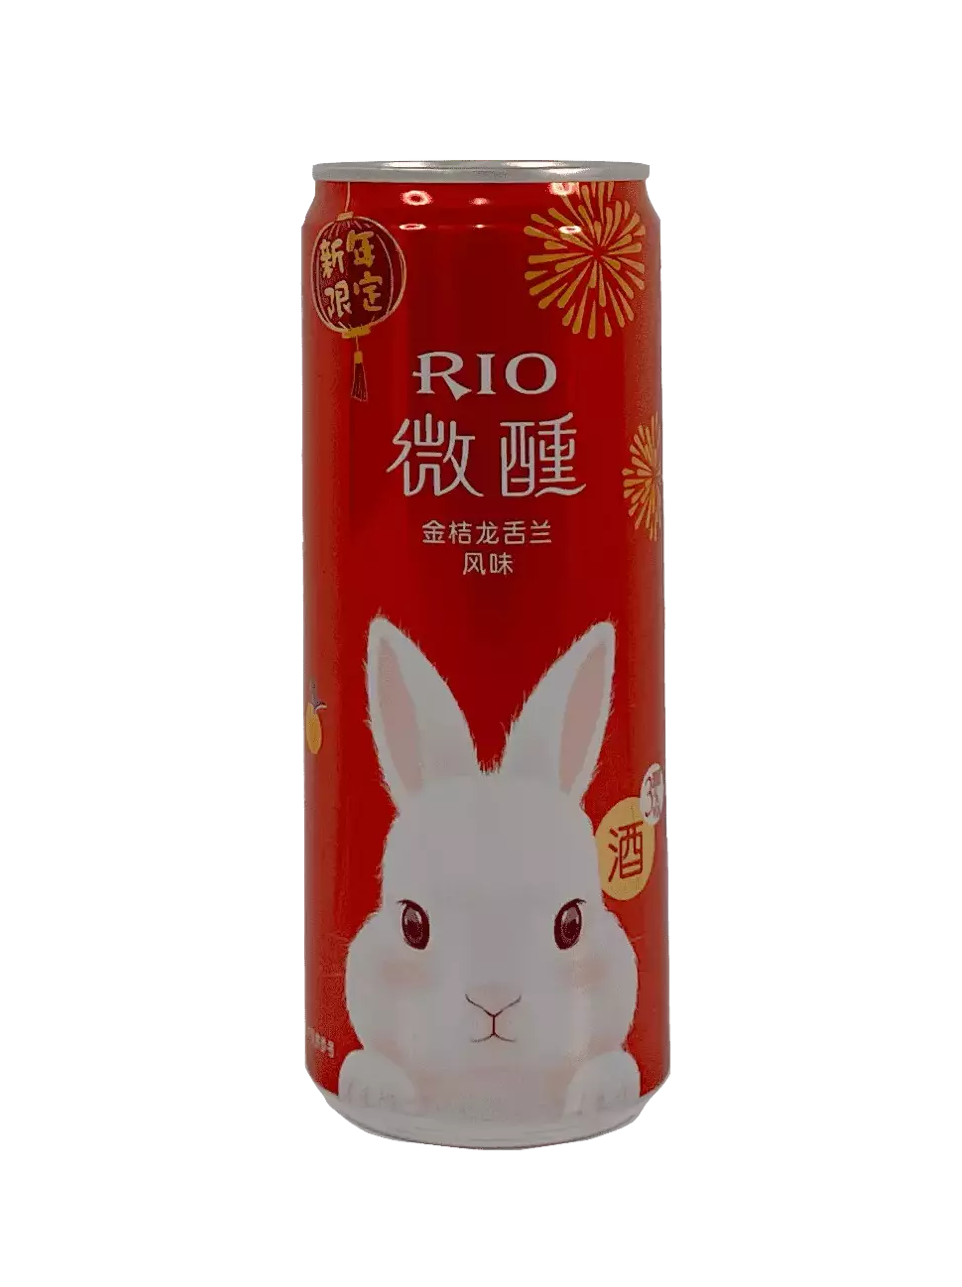 RIO微醺3度 柠檬/龙舌兰味风味鸡尾酒 330ml